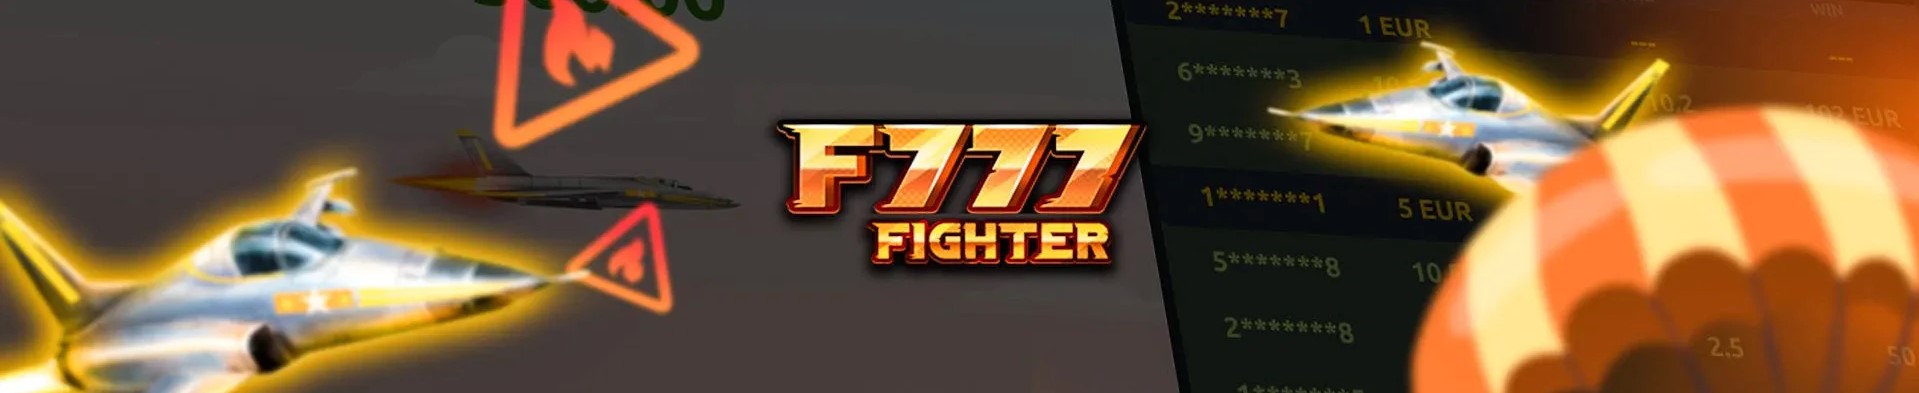 F777 fighter nga dula.